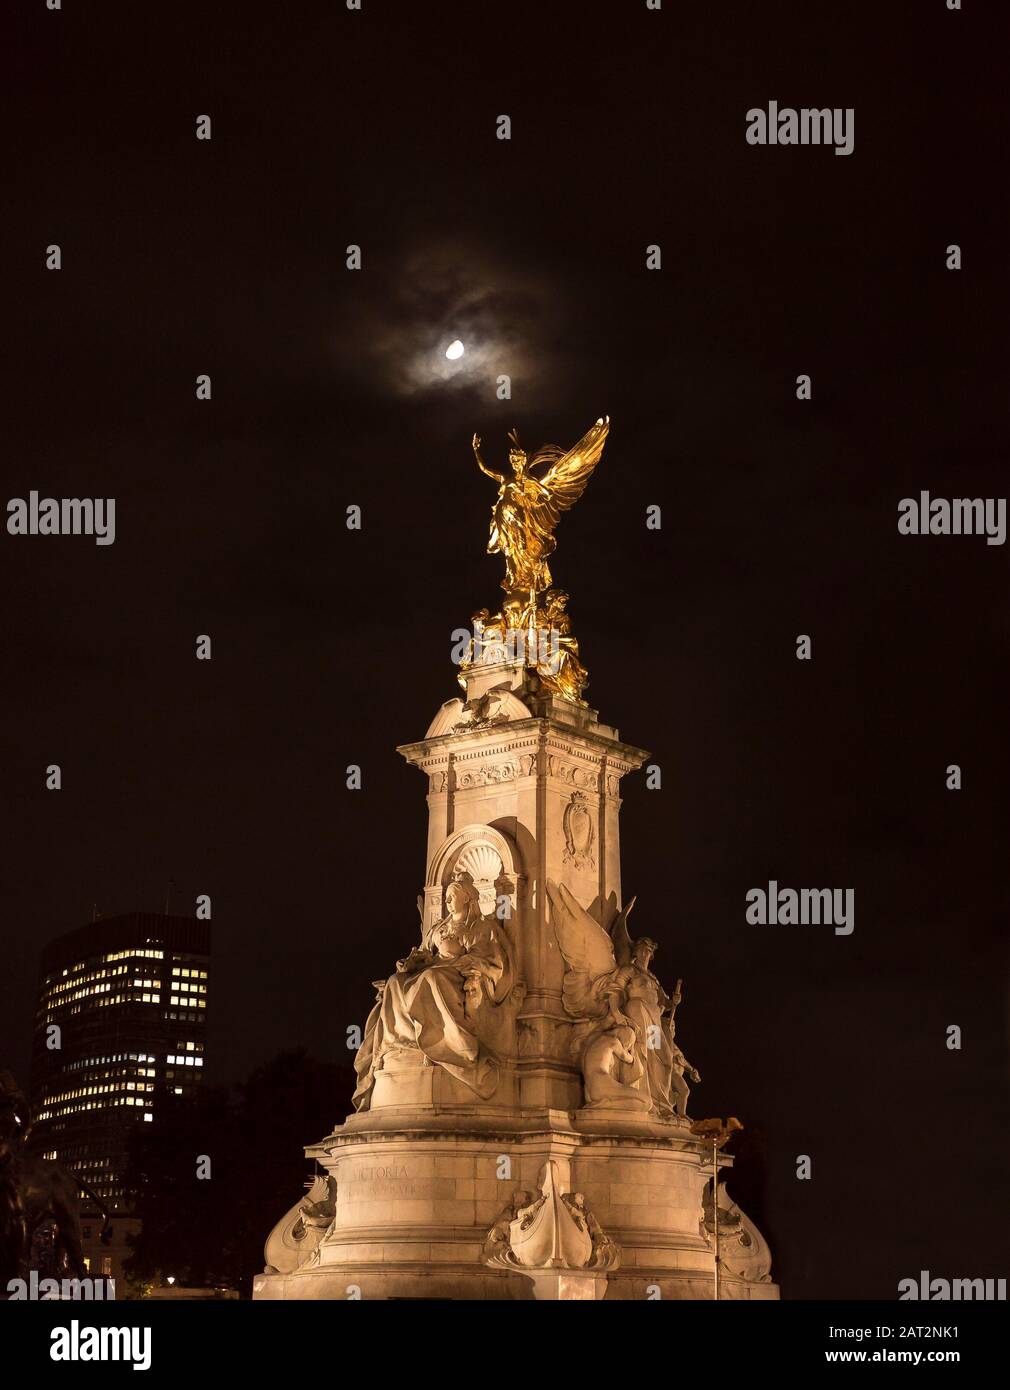 Vista notturna ad angolo basso, la statua commemorativa della Regina Vittoria di Buckingham Palace illuminata, isolata in cielo scuro; la statua della Vittoria alata splende di luce lunare. Foto Stock